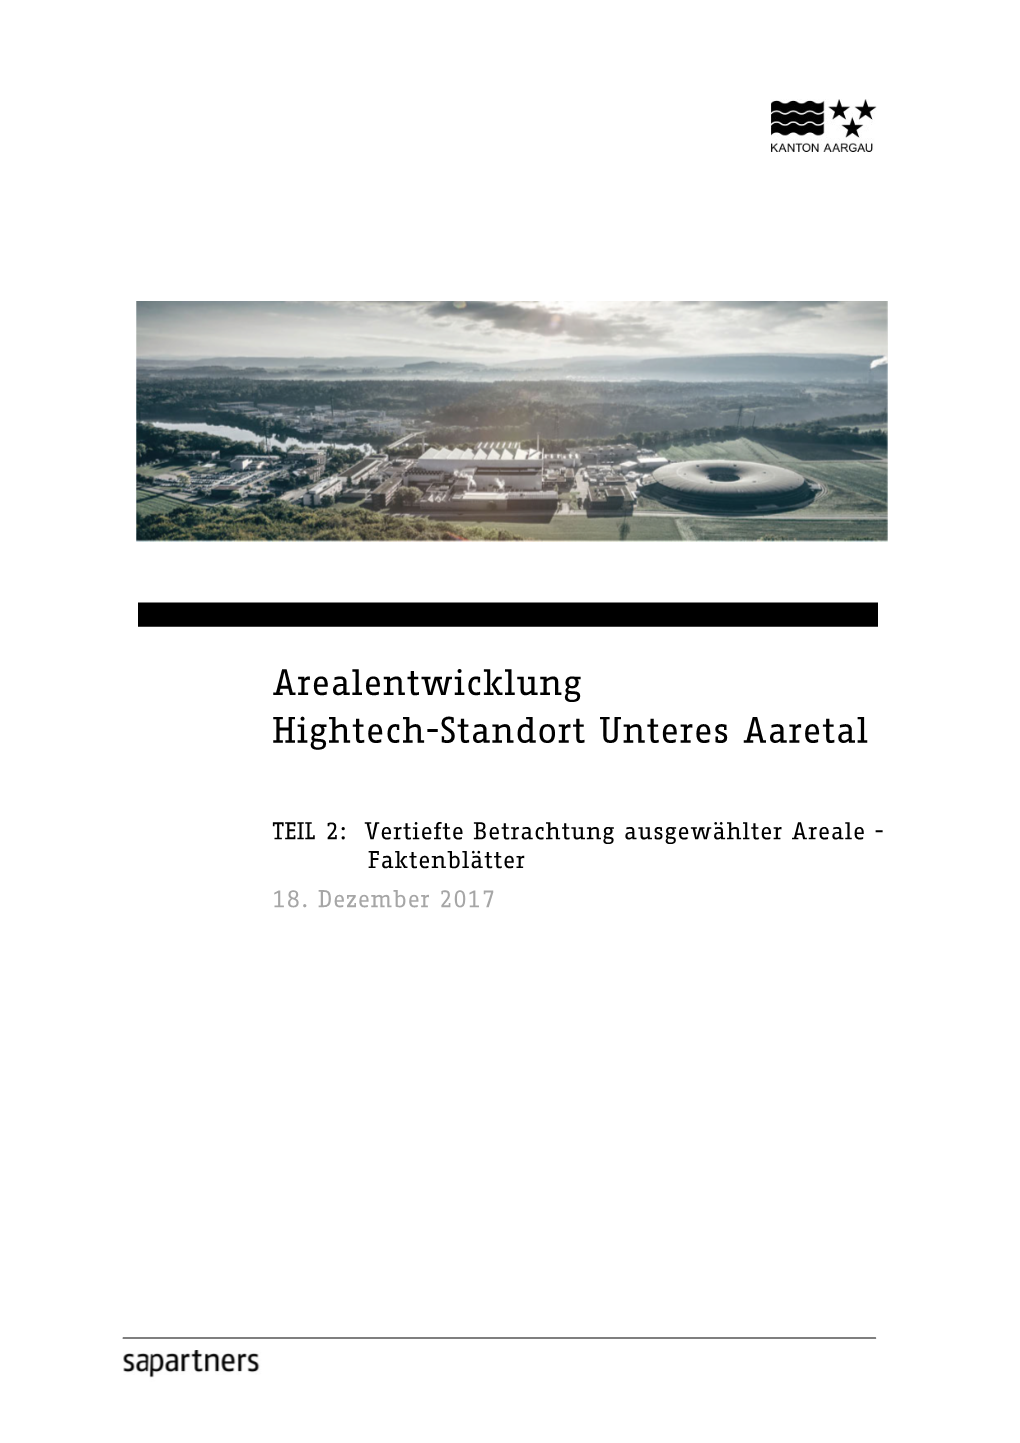 Arealentwicklung Hightech-Standort Unteres Aaretal